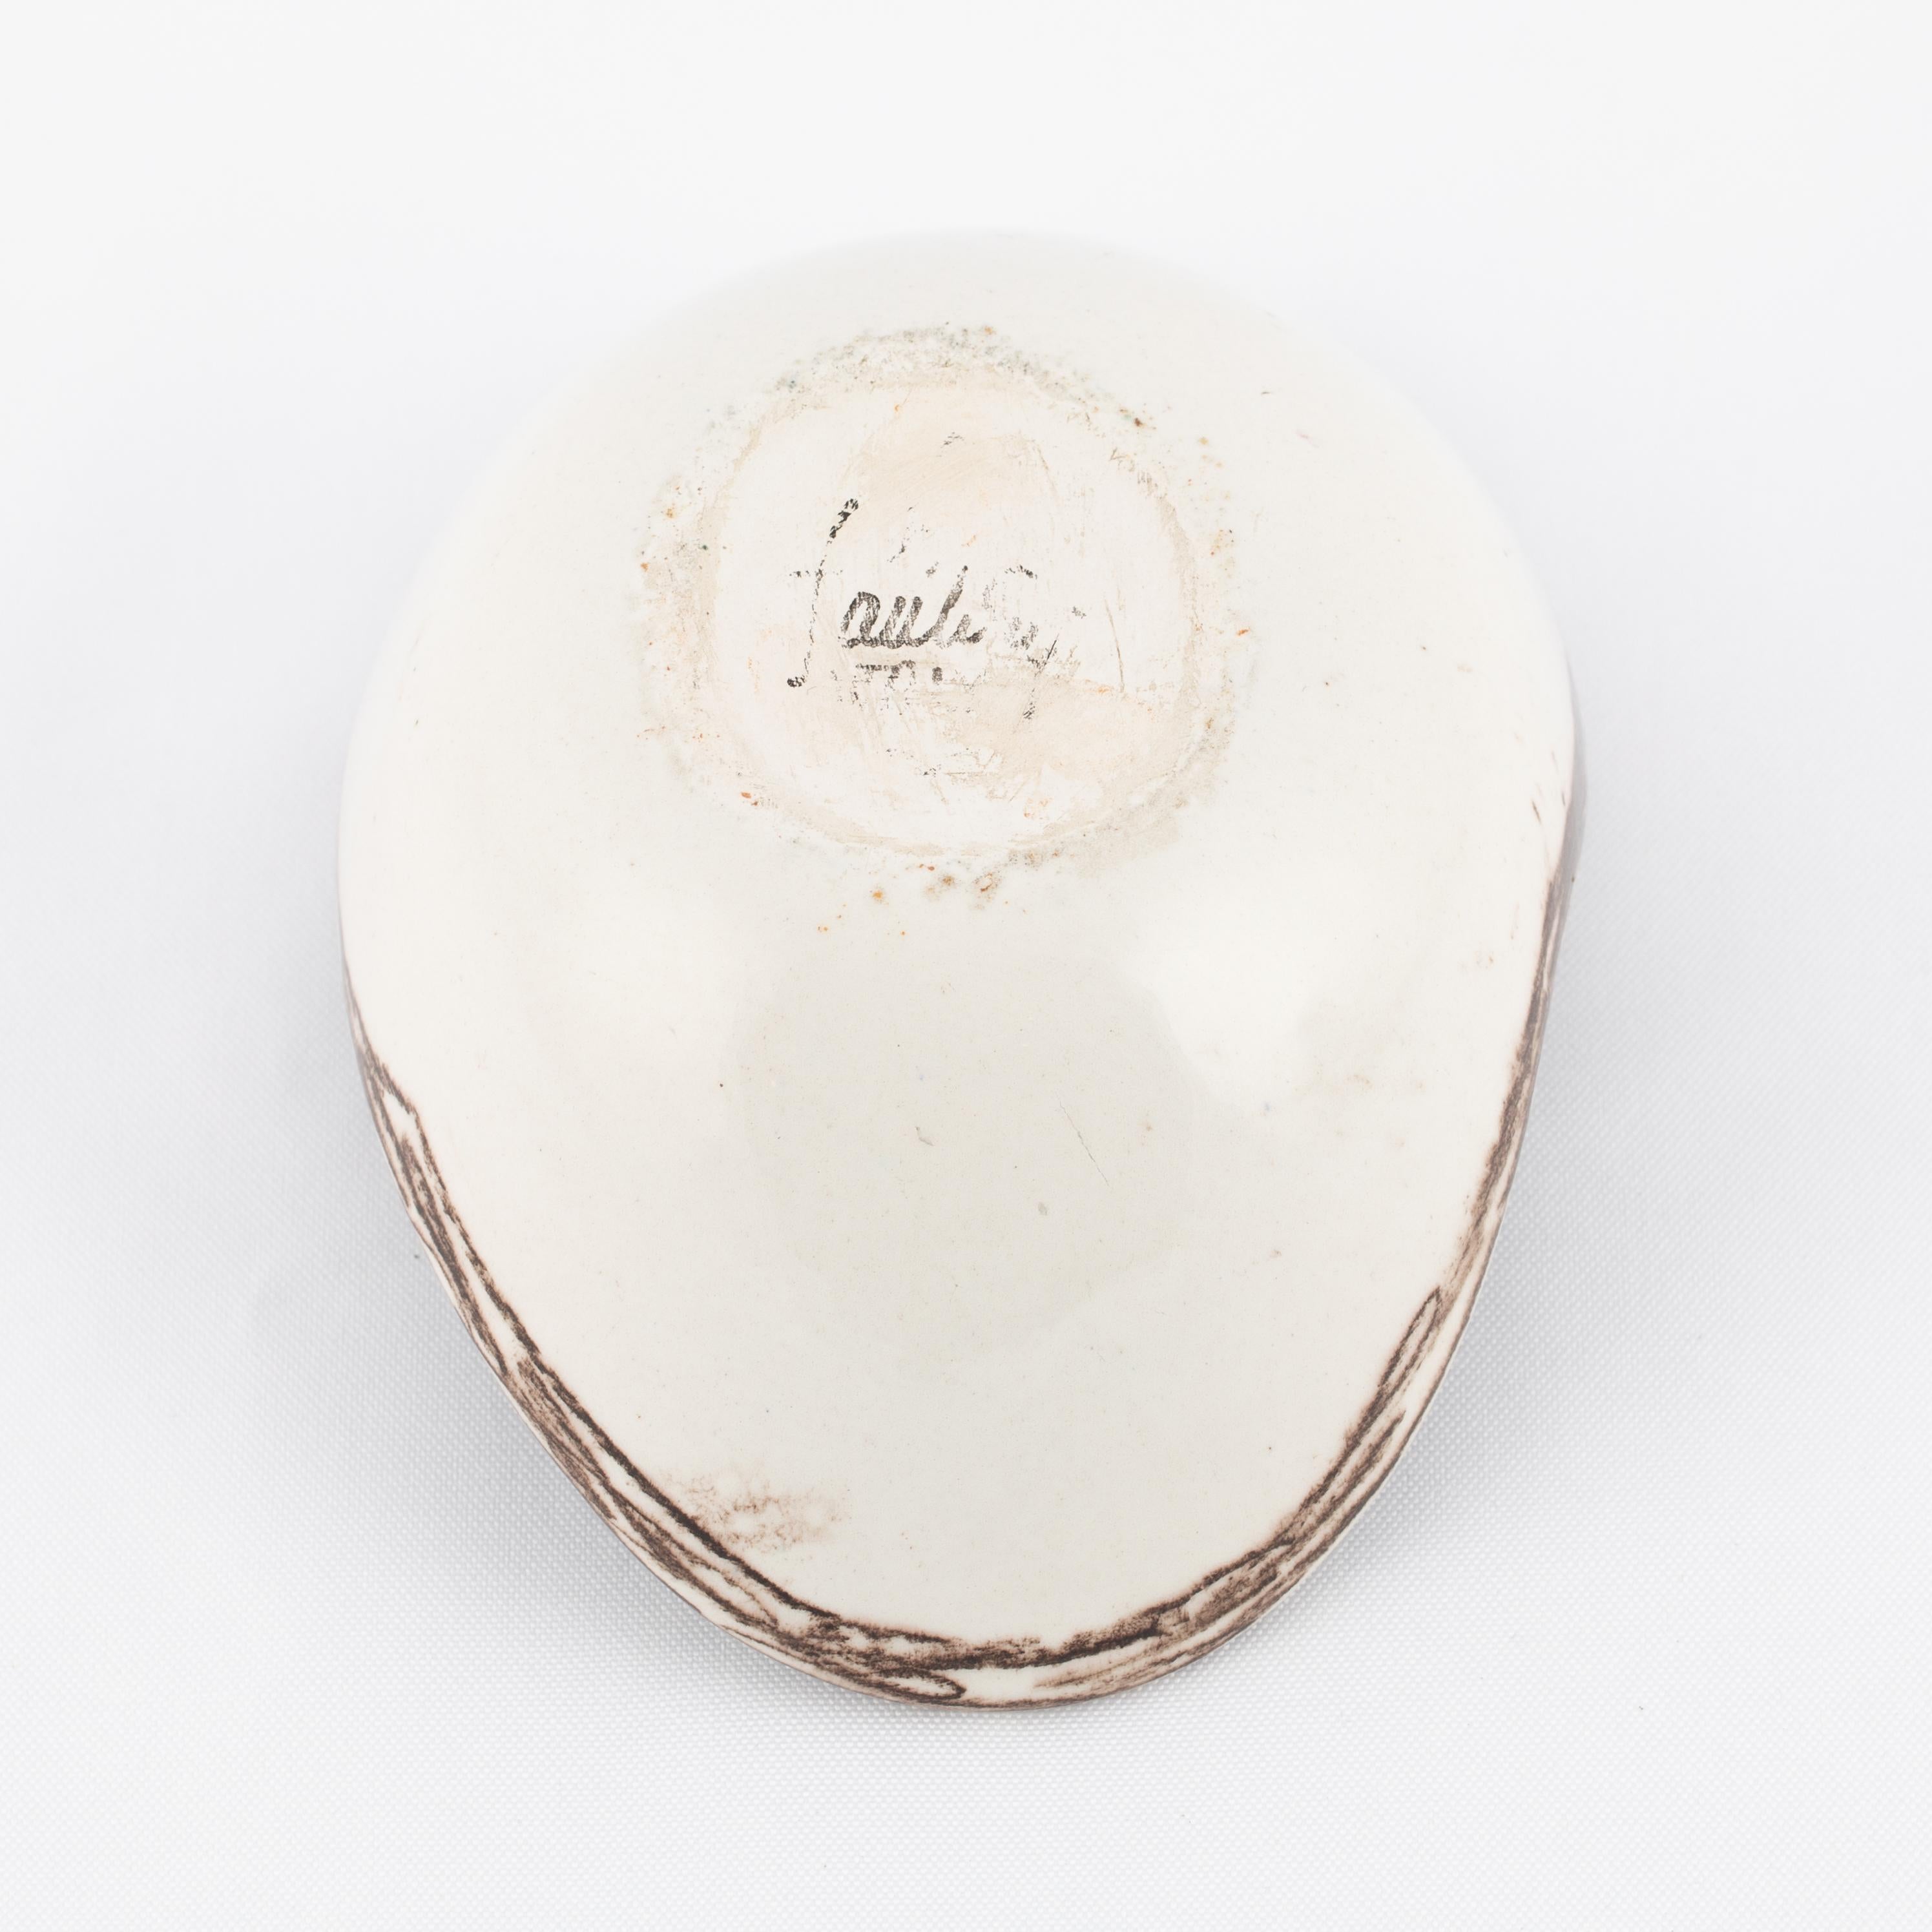 Marcello Fantoni Ceramic Bowl with Abstract Design, circa 1960s For Sale 4